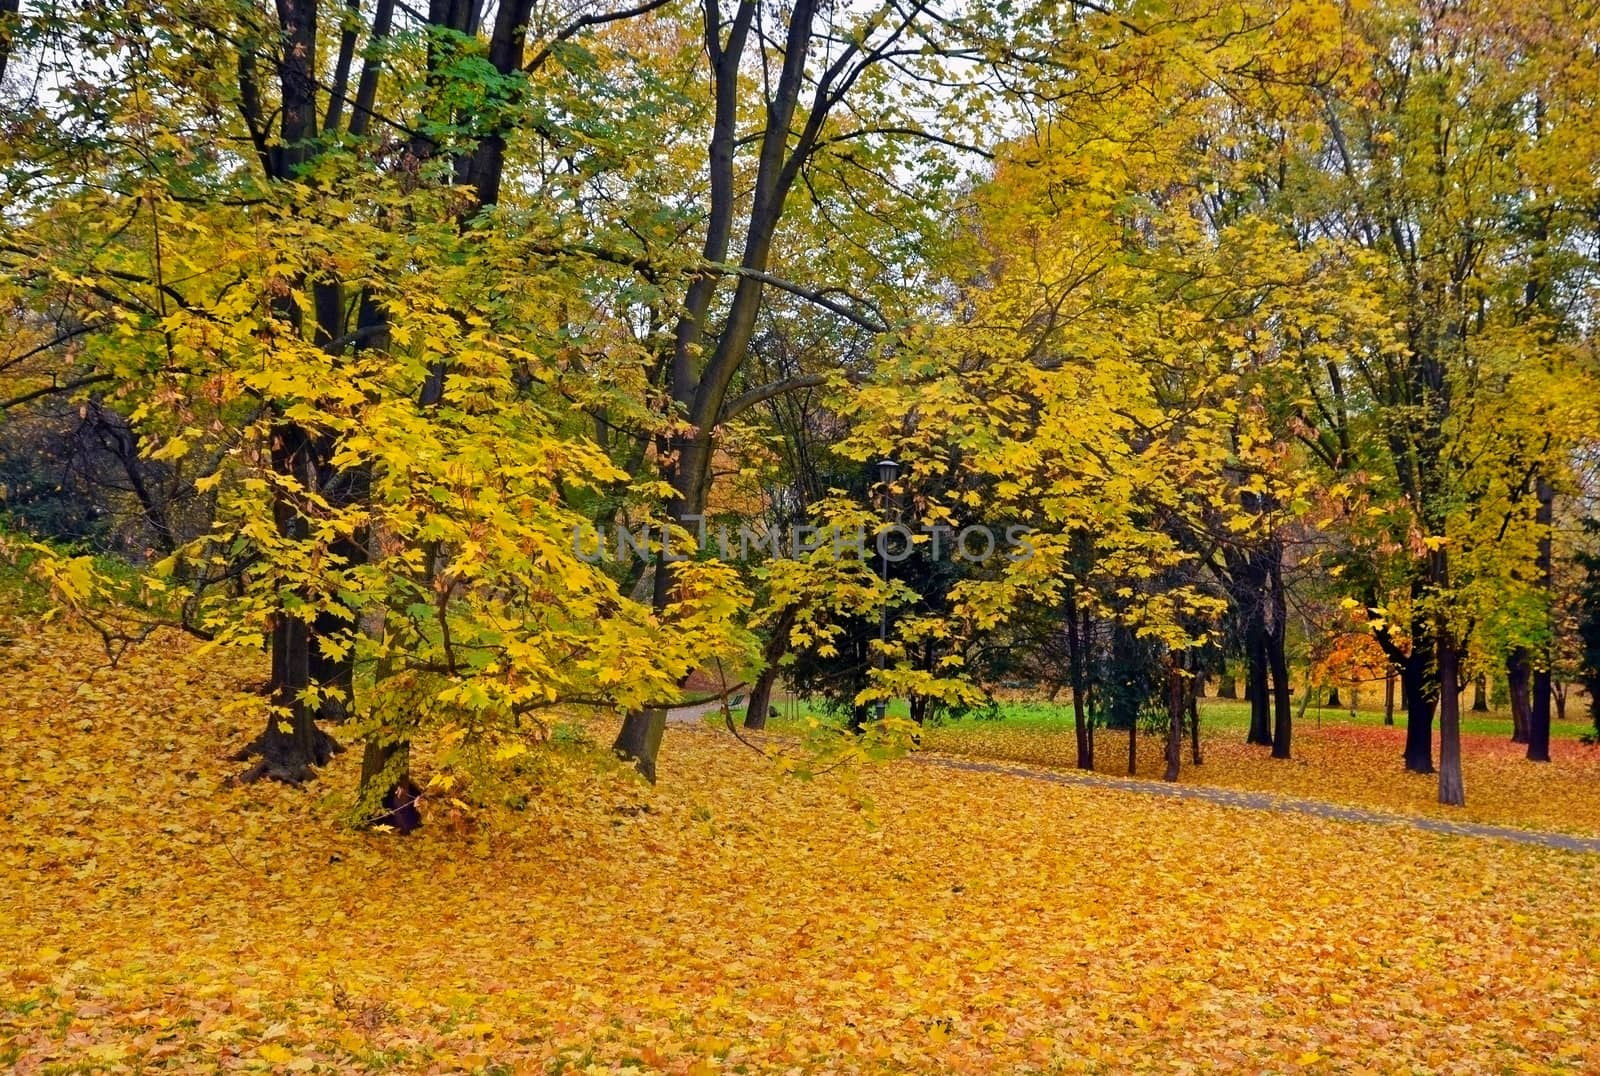 Park in autumn season.